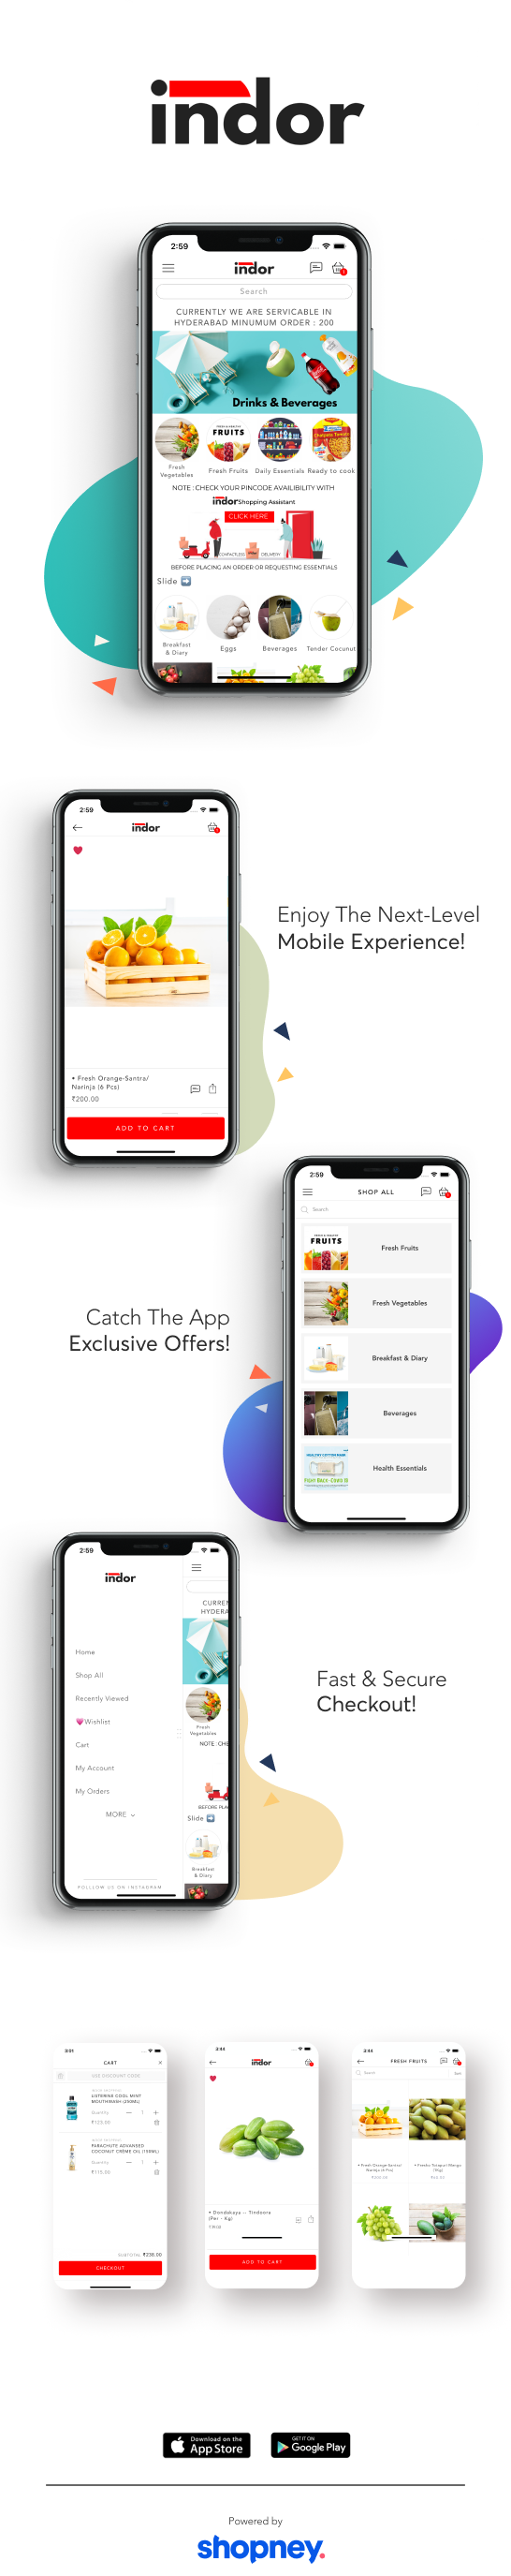 the mobile app design of Indor app